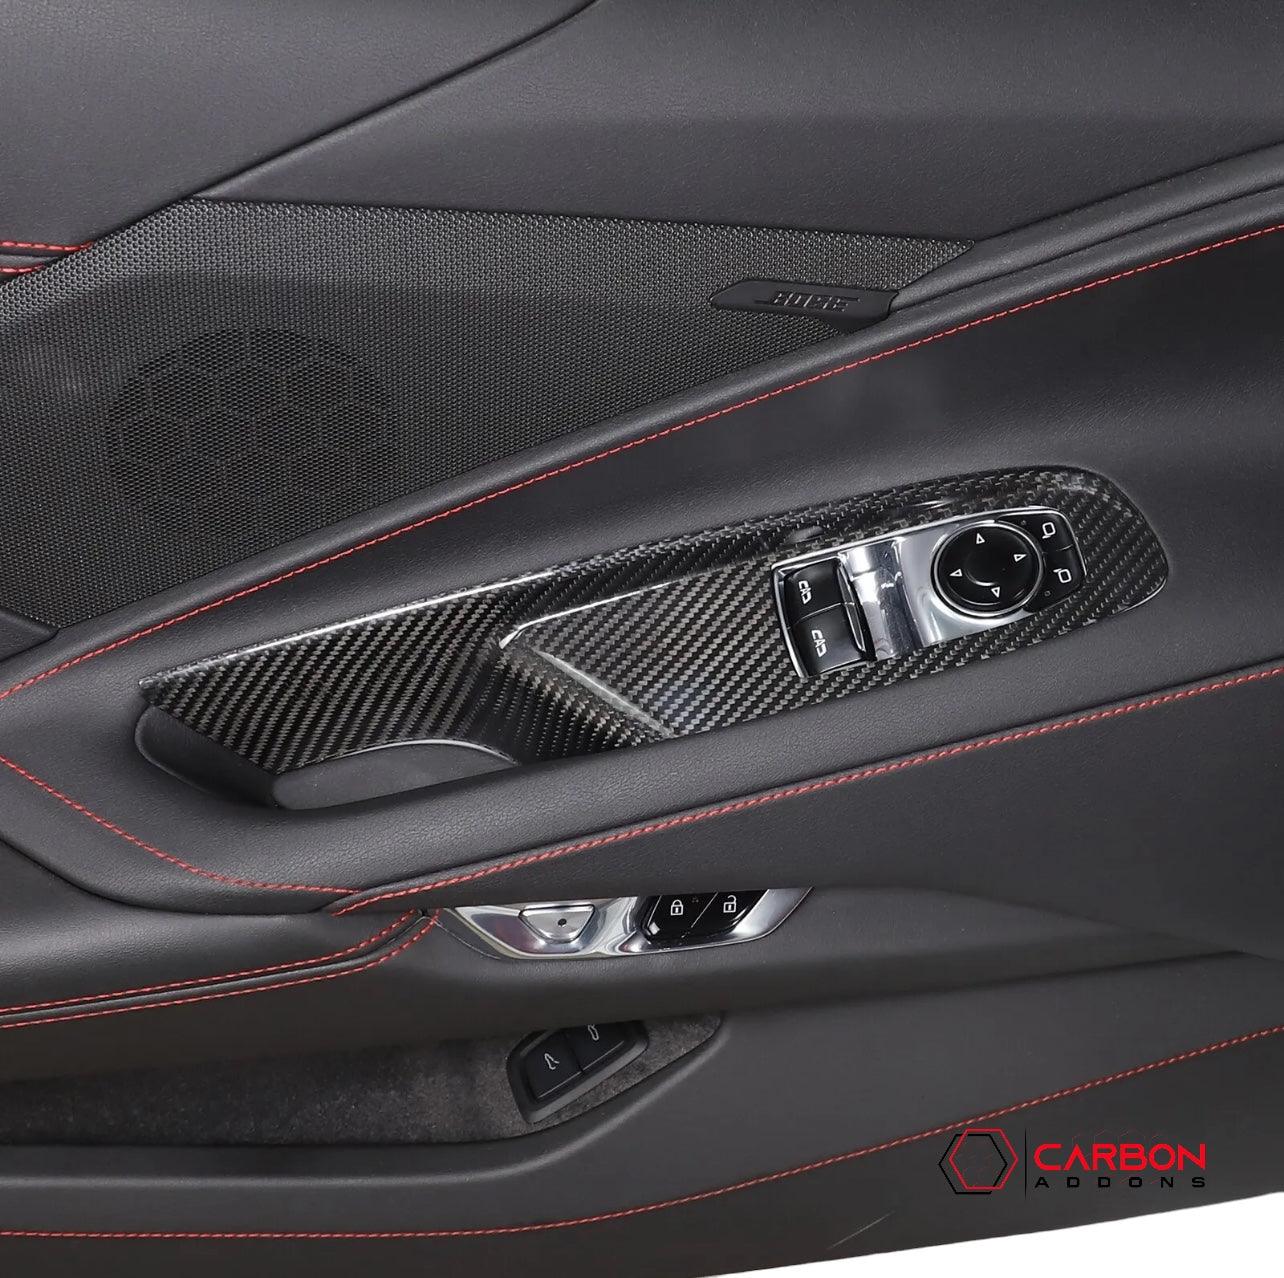 C8 Corvette 2020+ Real Carbon Fiber Window Switch Trim Cover - carbonaddons Carbon Fiber Parts, Accessories, Upgrades, Mods